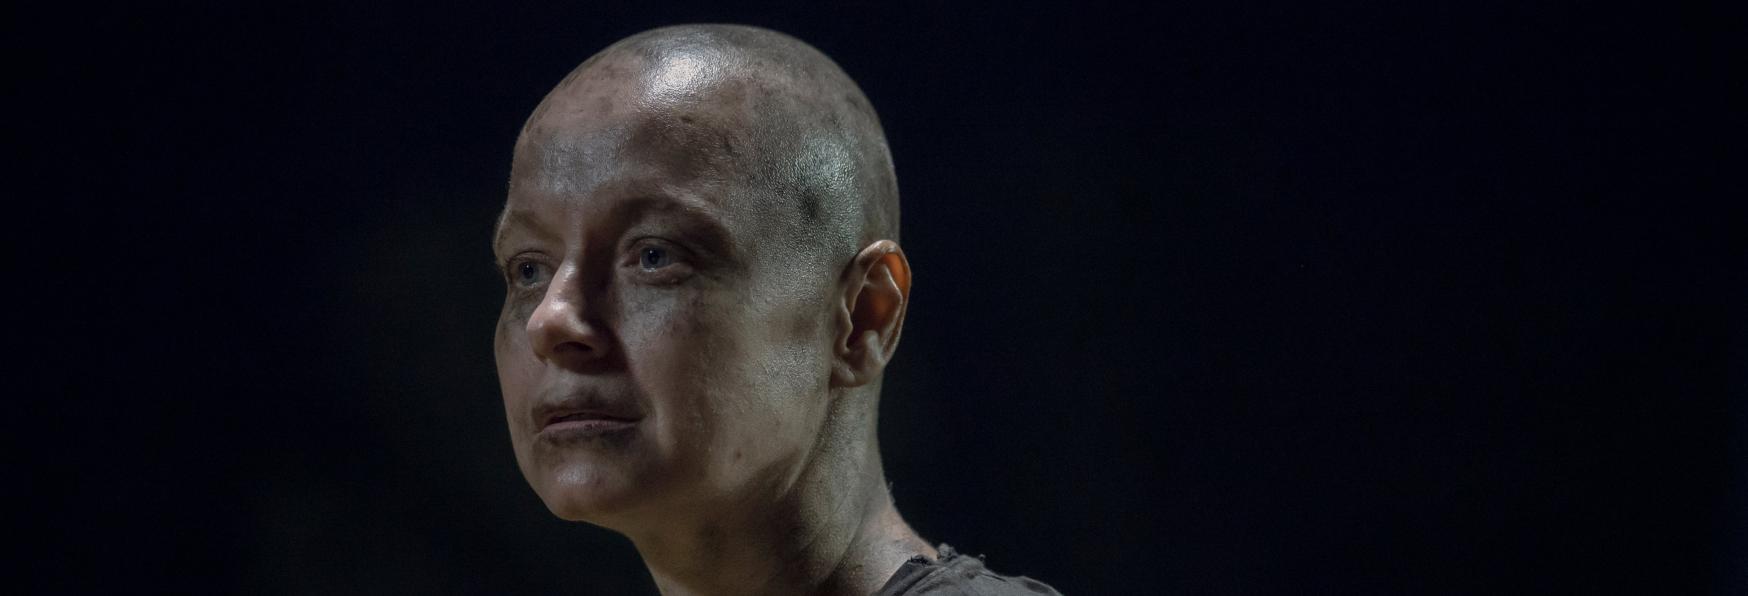 Tales of The Walking Dead: Samantha Morton tornerà nel Ruolo di Alpha